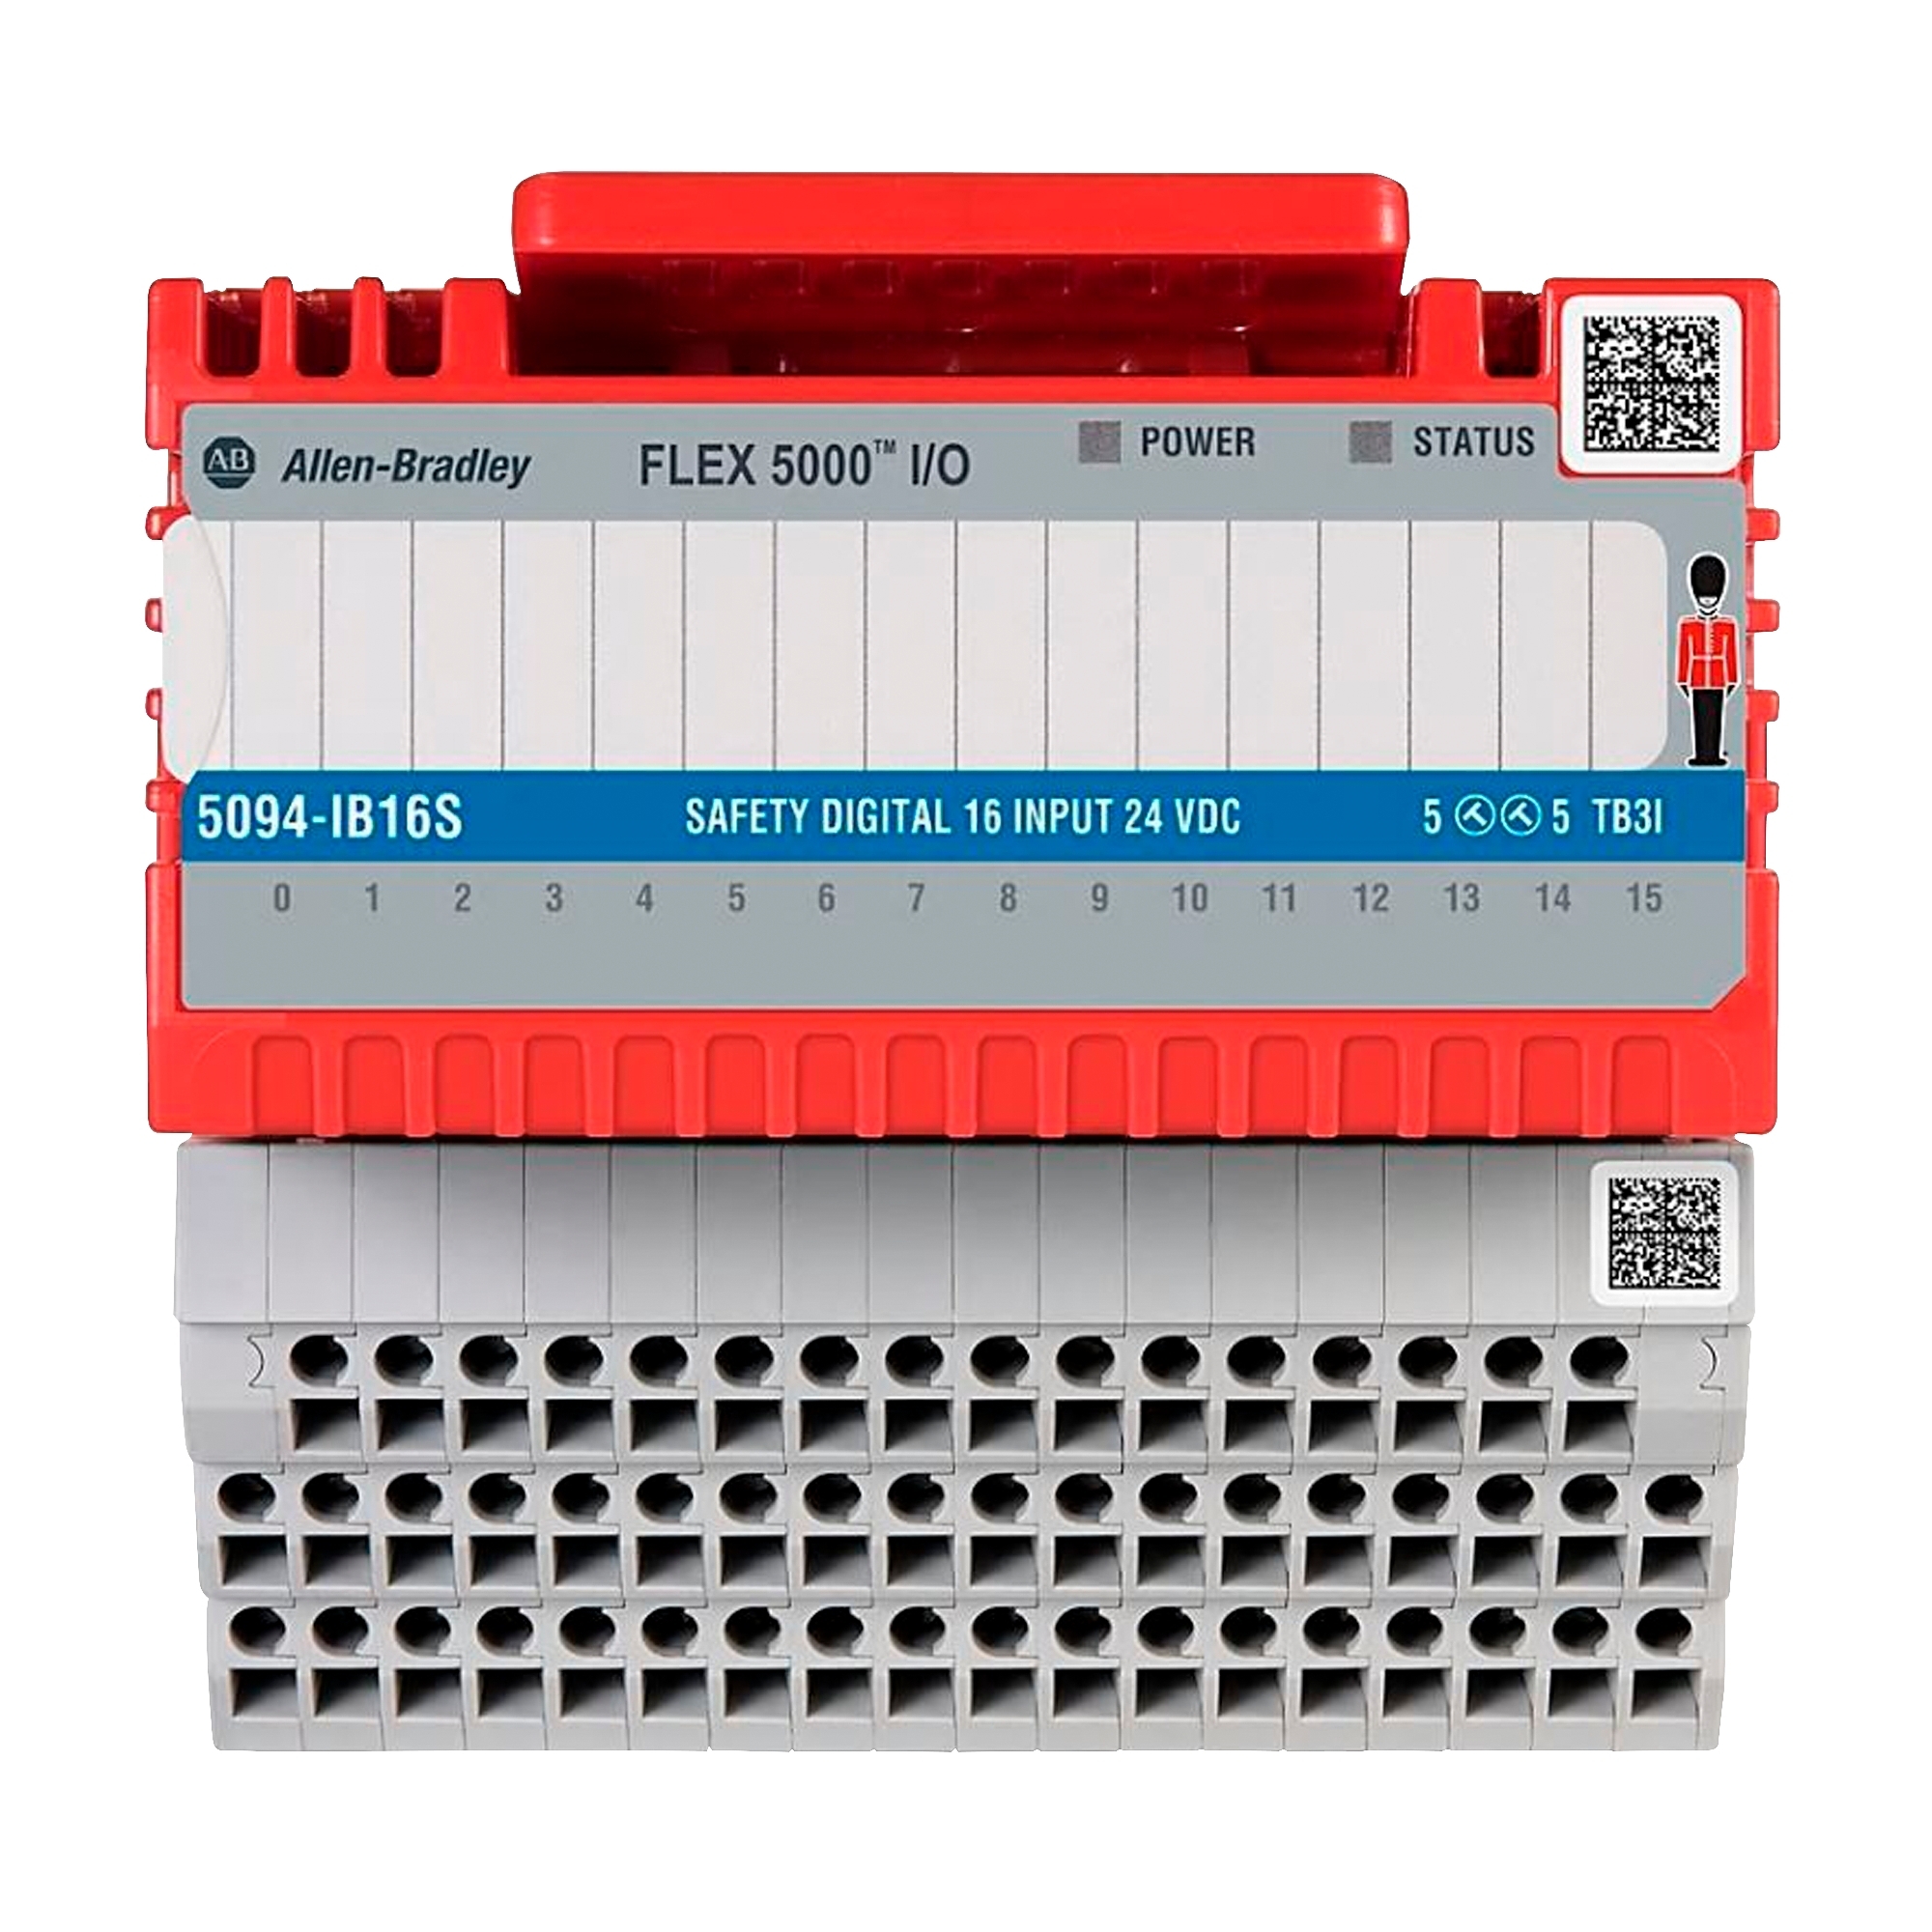 Allen-Bradley FLEX 5000 IO Digital 16 Input Safety Module